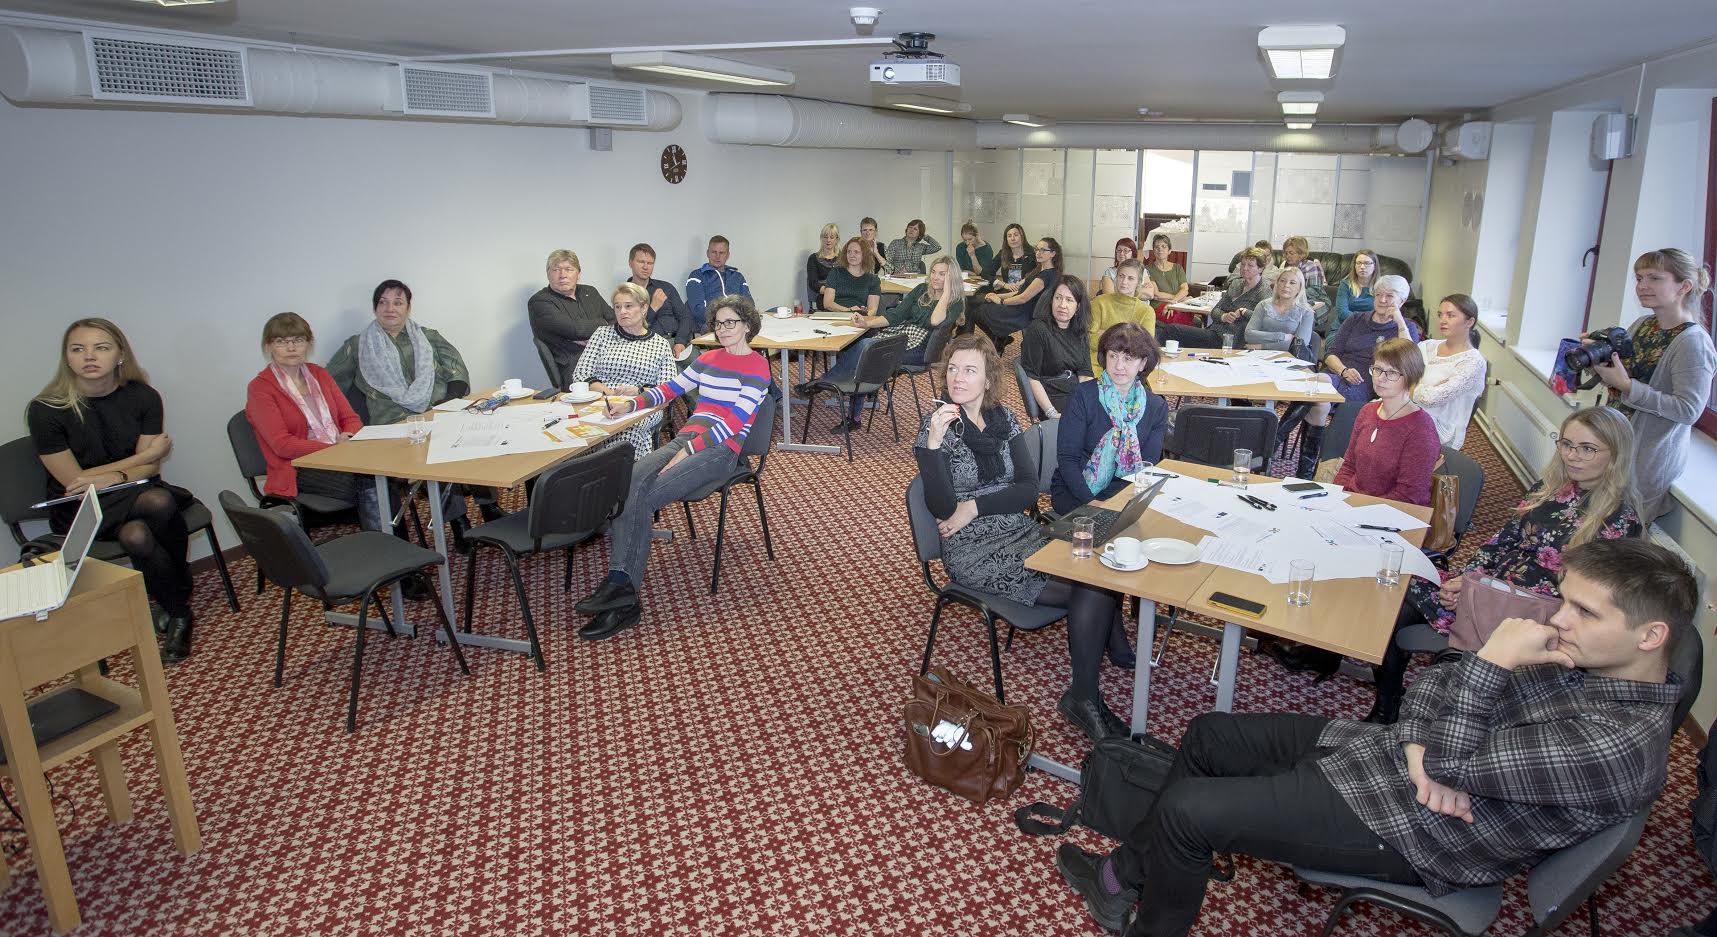 Teisipäeval, 12. novembril osalesid Kagu-Eesti ettevõtjad töövõime foorumil, et arutada vähenenud töövõimega inimestega seotud kitsaskohtade ja võimaluste üle. Foto: AIGAR NAGEL